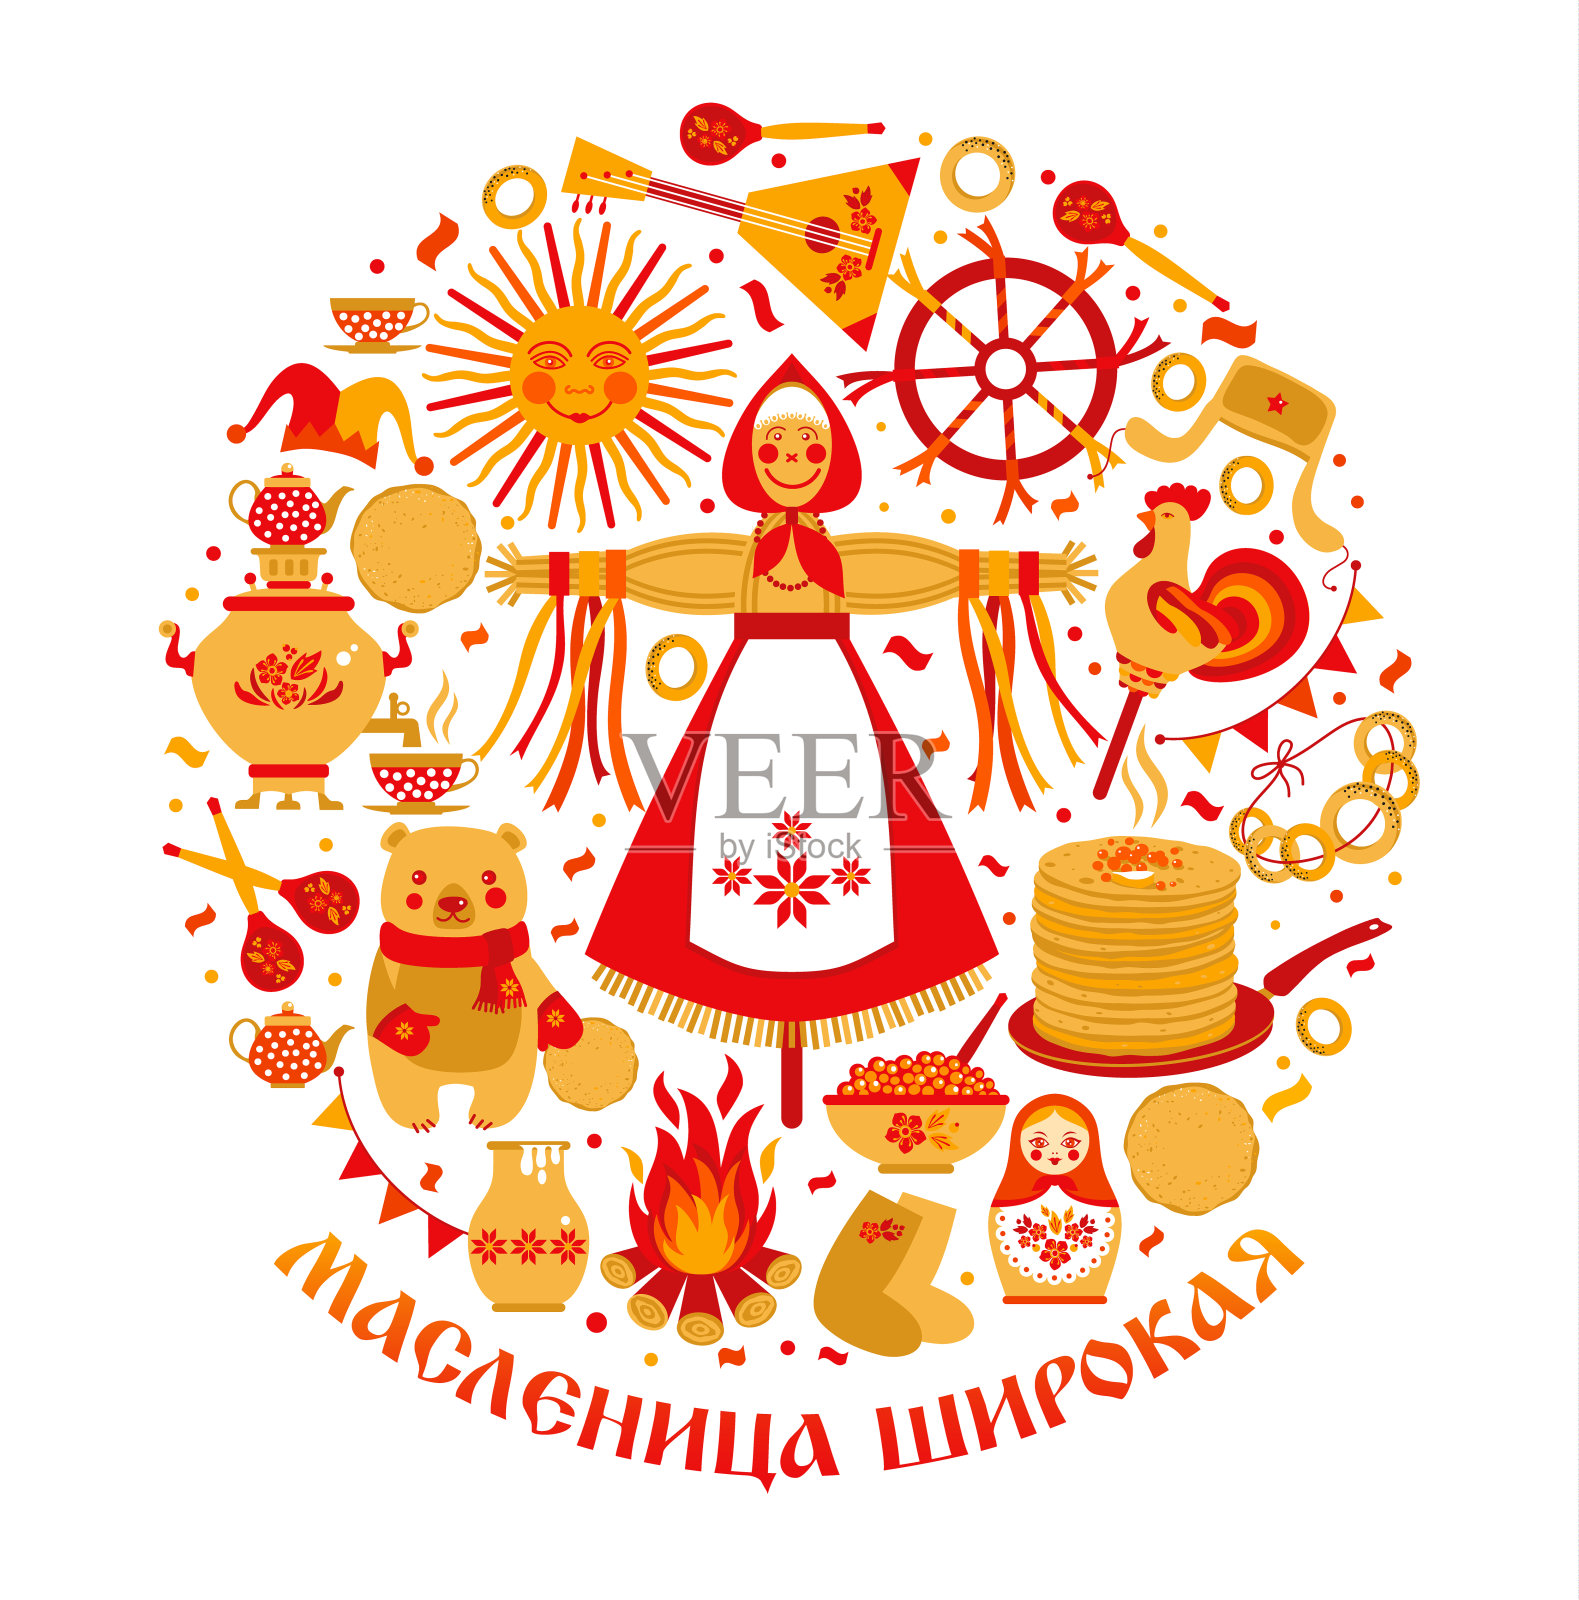 矢量设定的主题为俄罗斯节日嘉年华。俄文翻译宽Shrovetide或Maslenitsa。插画图片素材